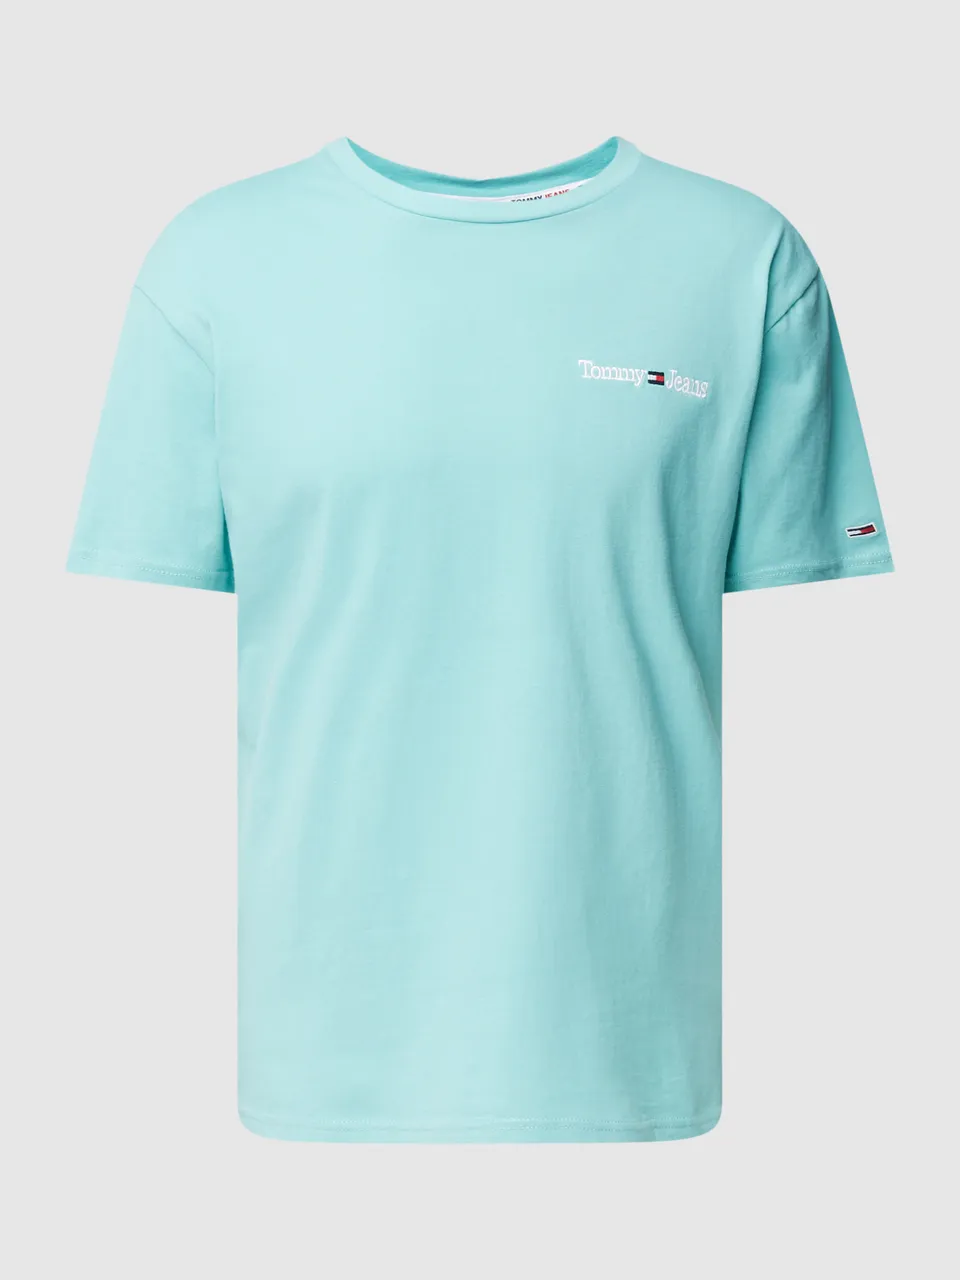 Tommy Hilfiger T-Shirt mit Label-Stitching Modell \'LINEAR\' DM0DM15790 -  Preise vergleichen